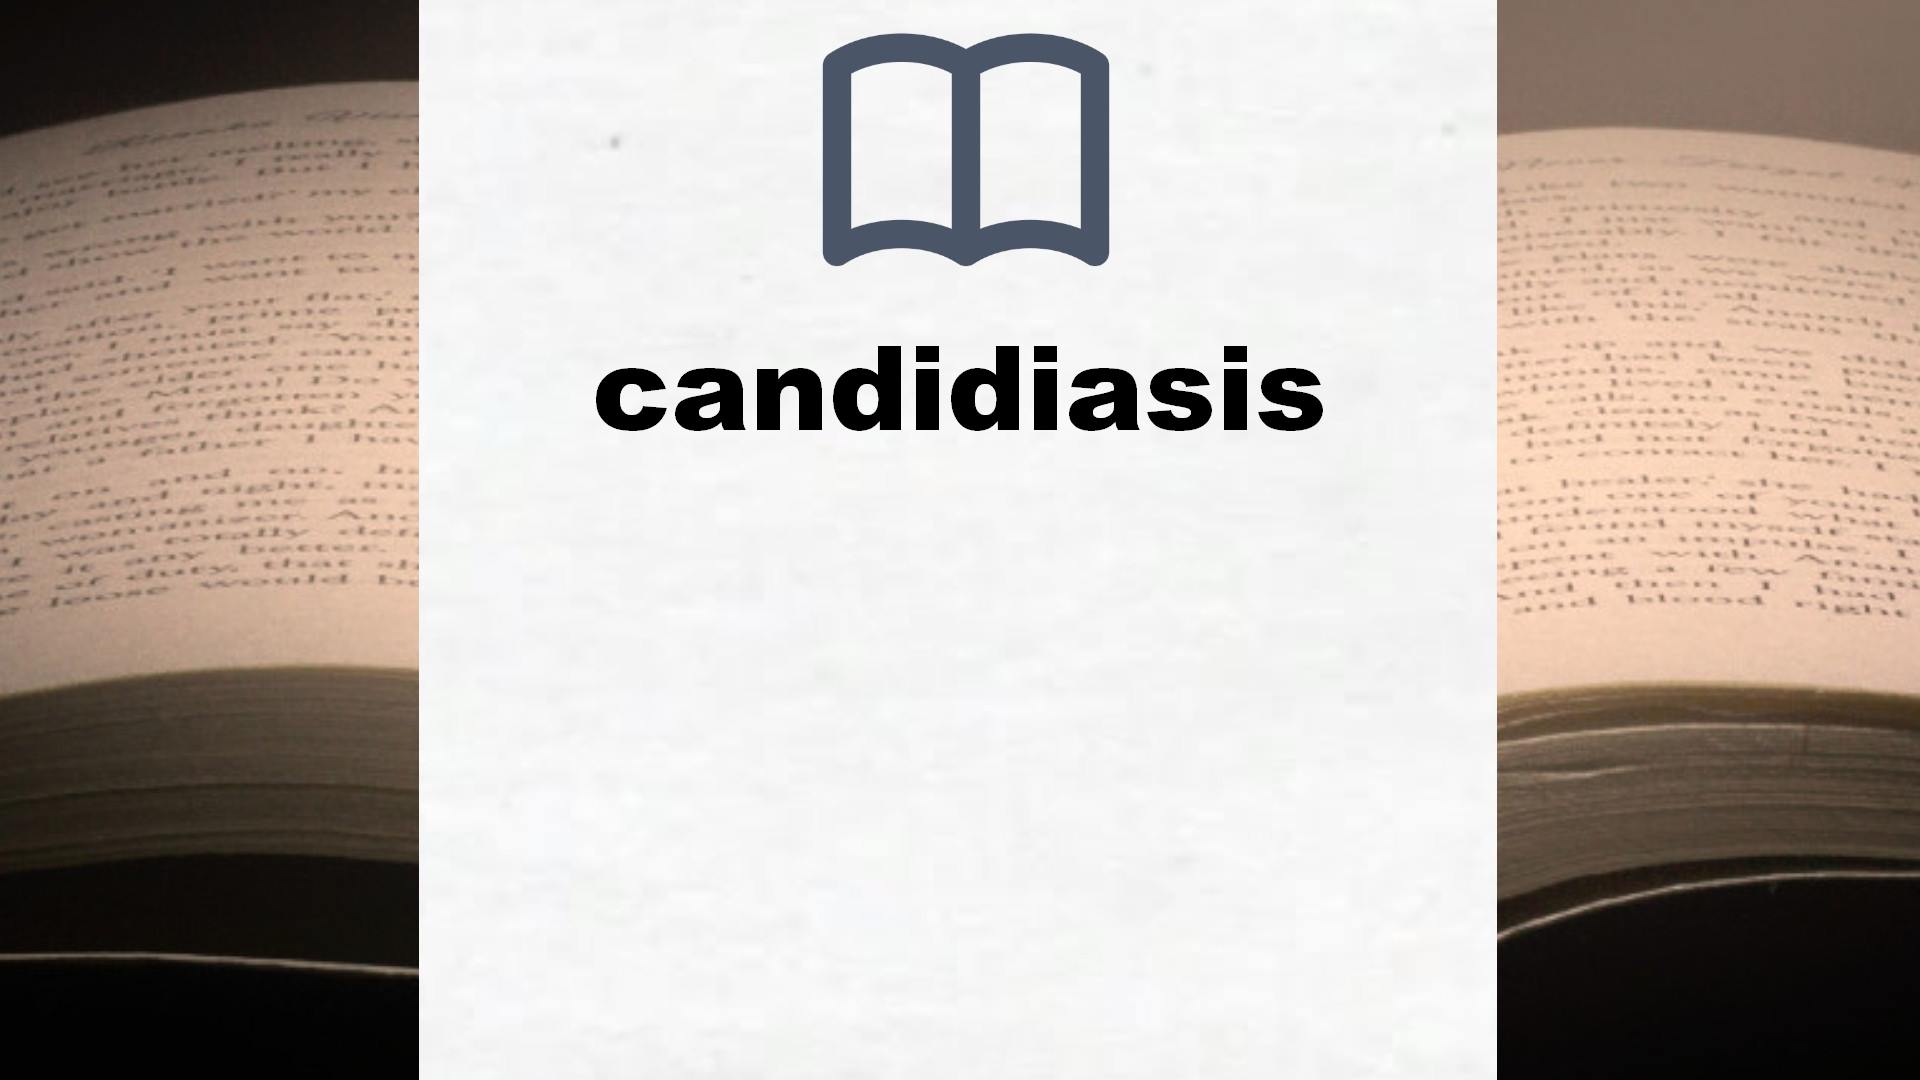 Libros sobre candidiasis